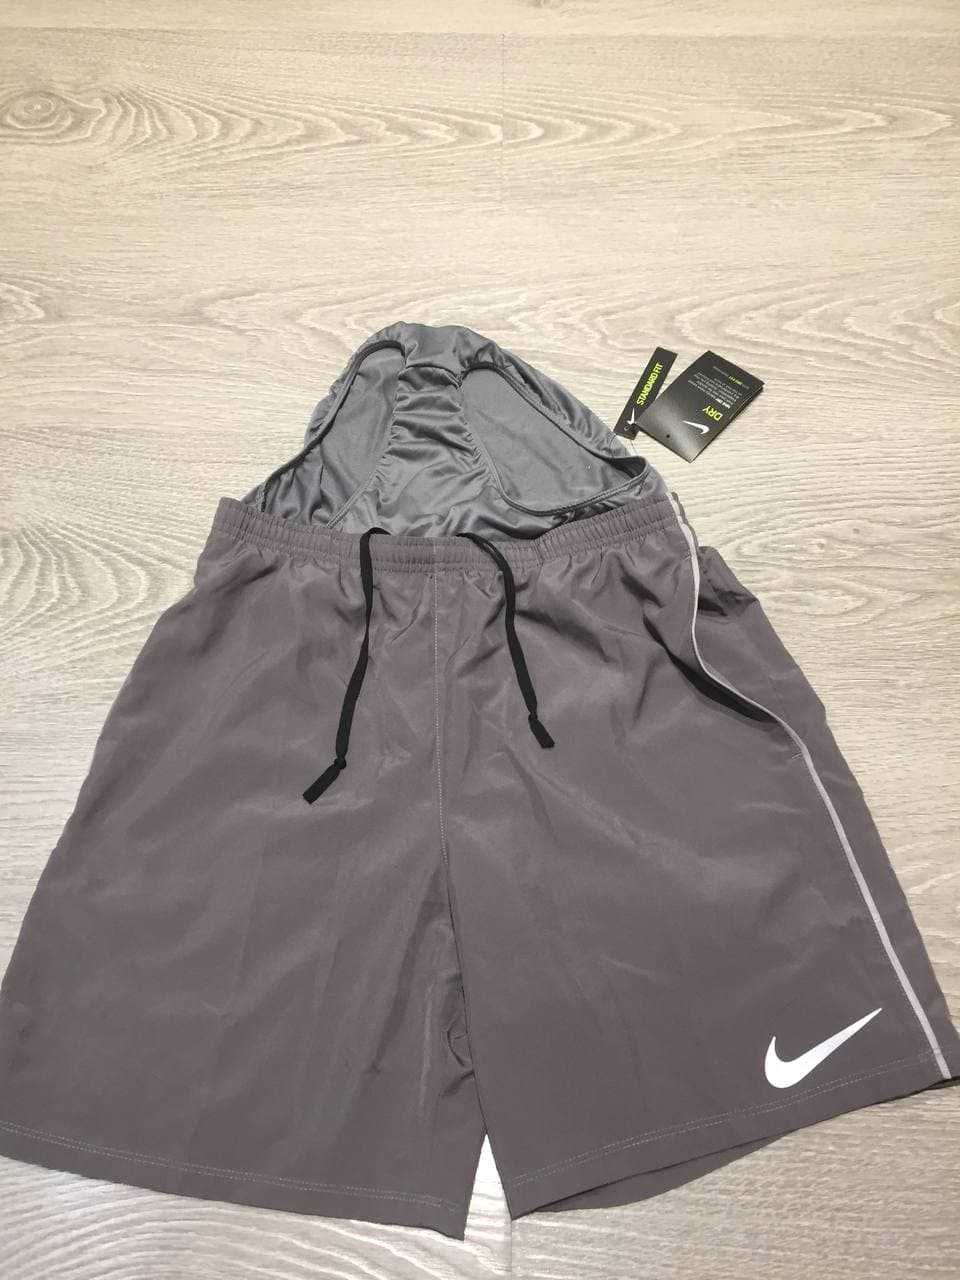 Спортивные брендовые шорты Nike. оригинальные 100%.